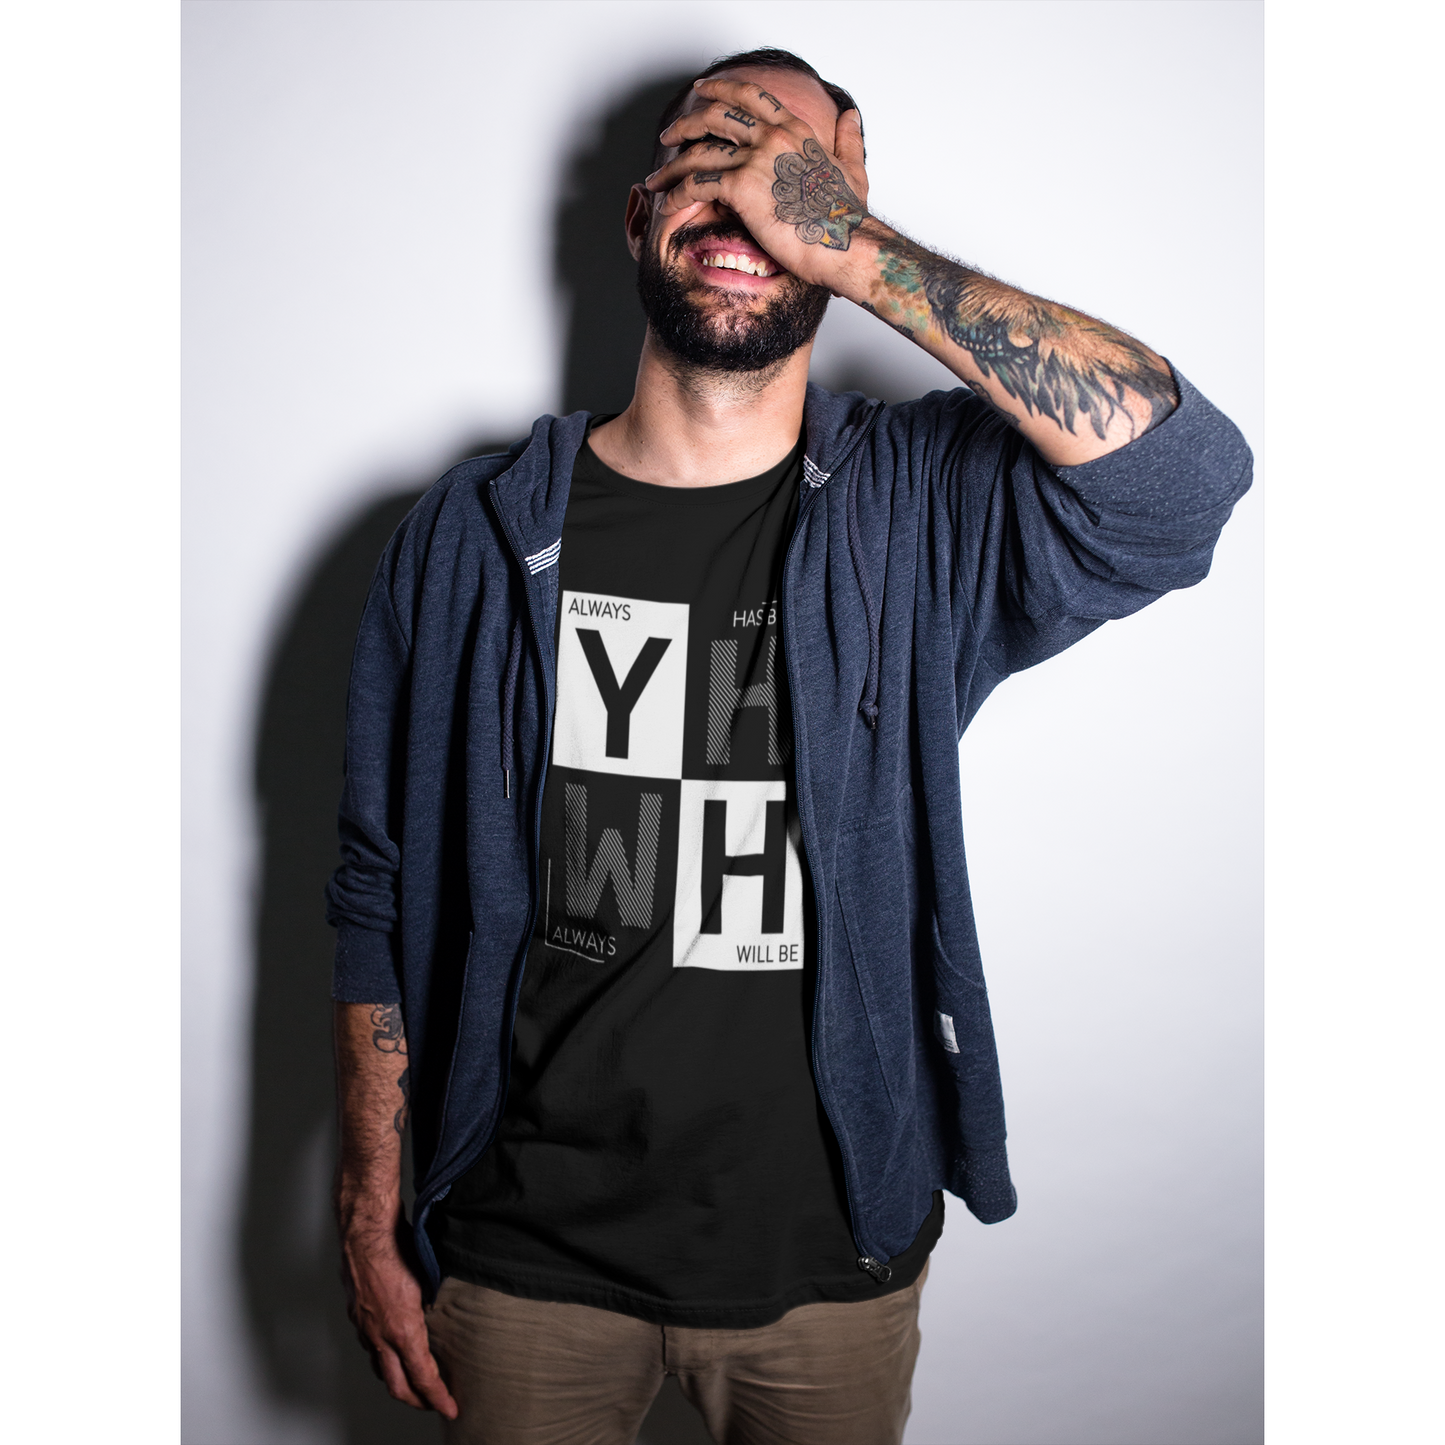 YHWH / Yahweh | T-Shirt for Women or Men